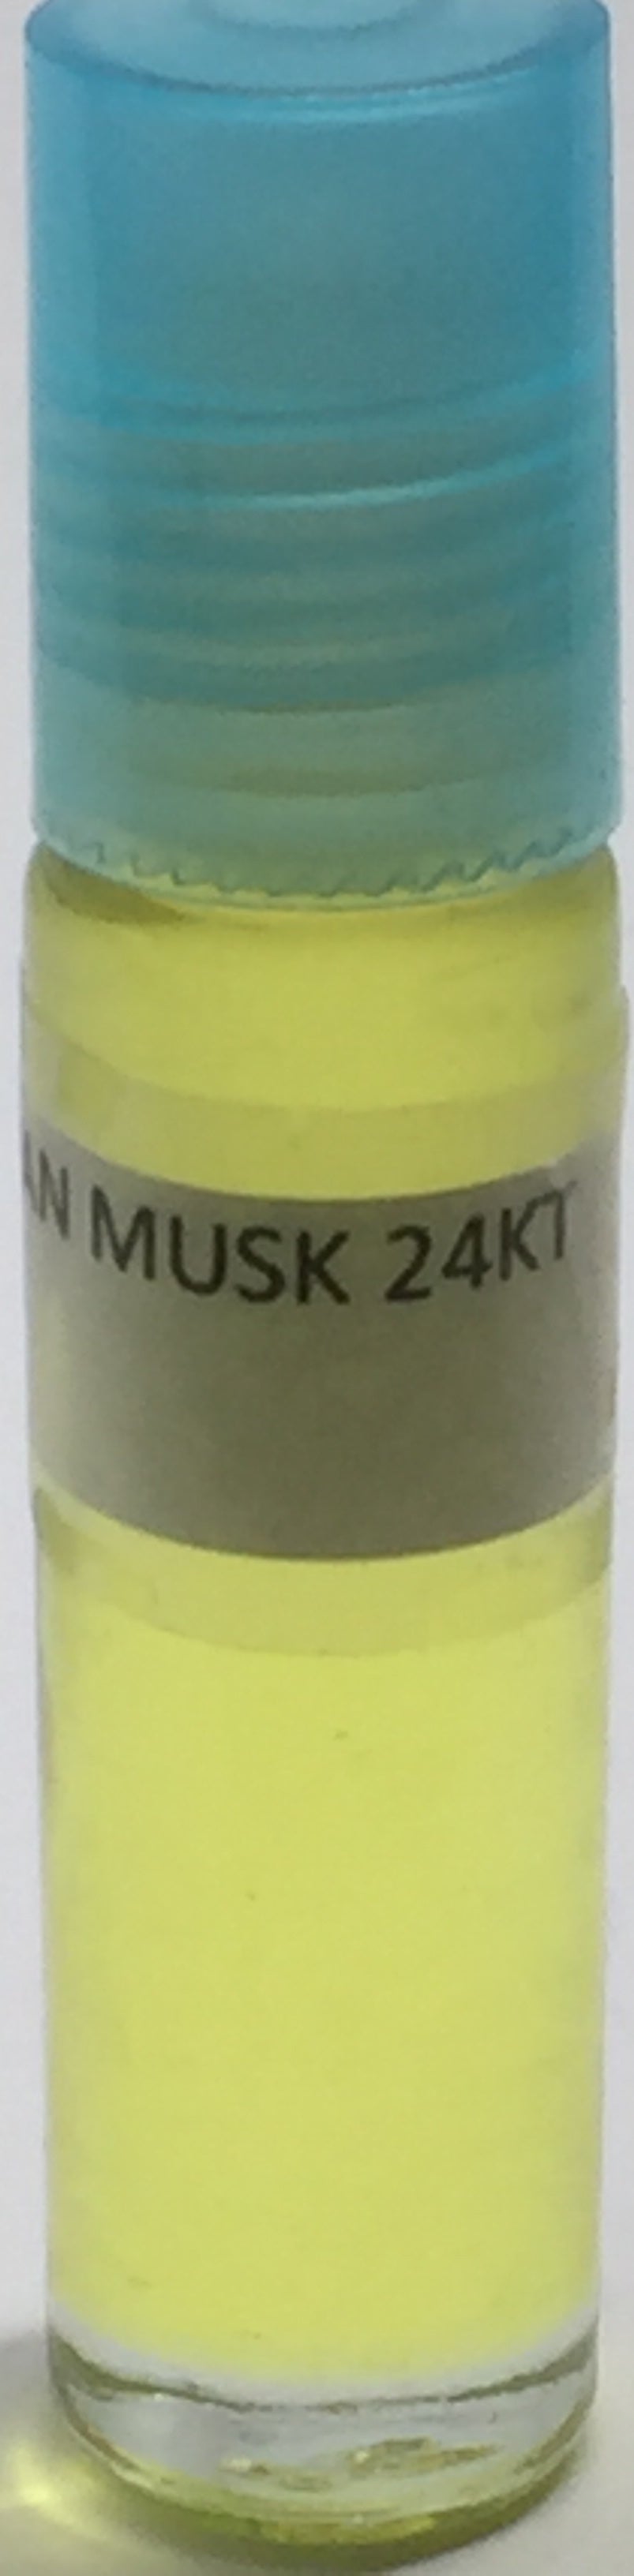 Egyptian Musk 24 KT: Fragrance(Perfume)Oil